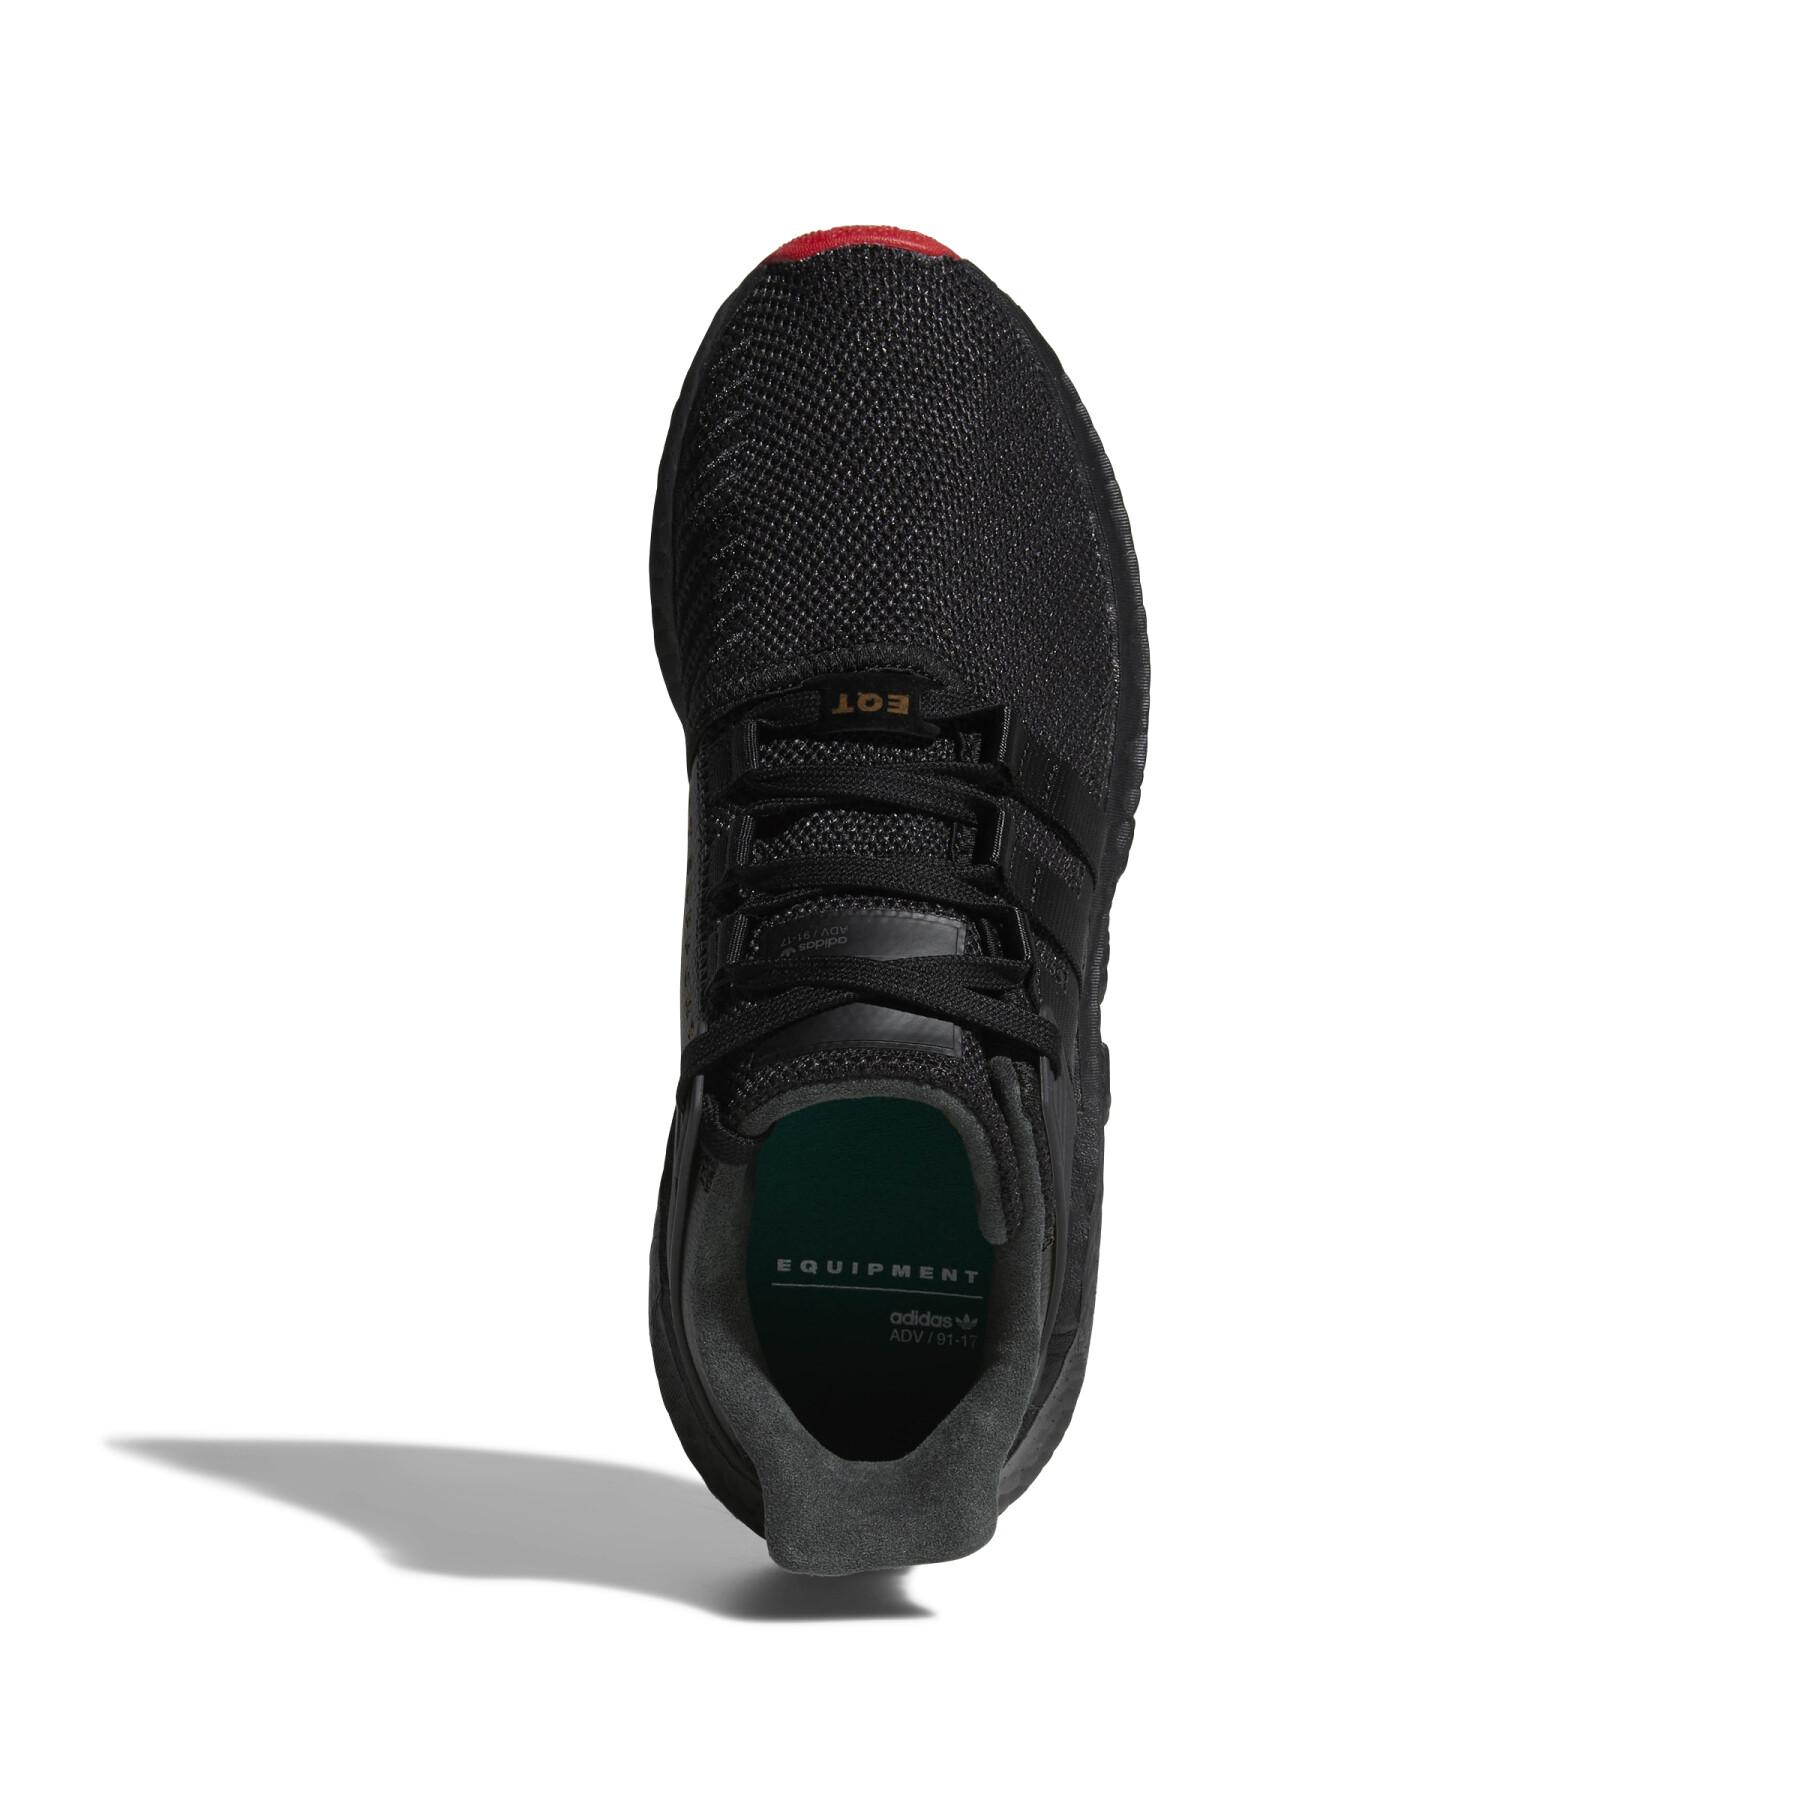 Sneakers adidas Originals Eqt Support 93/17